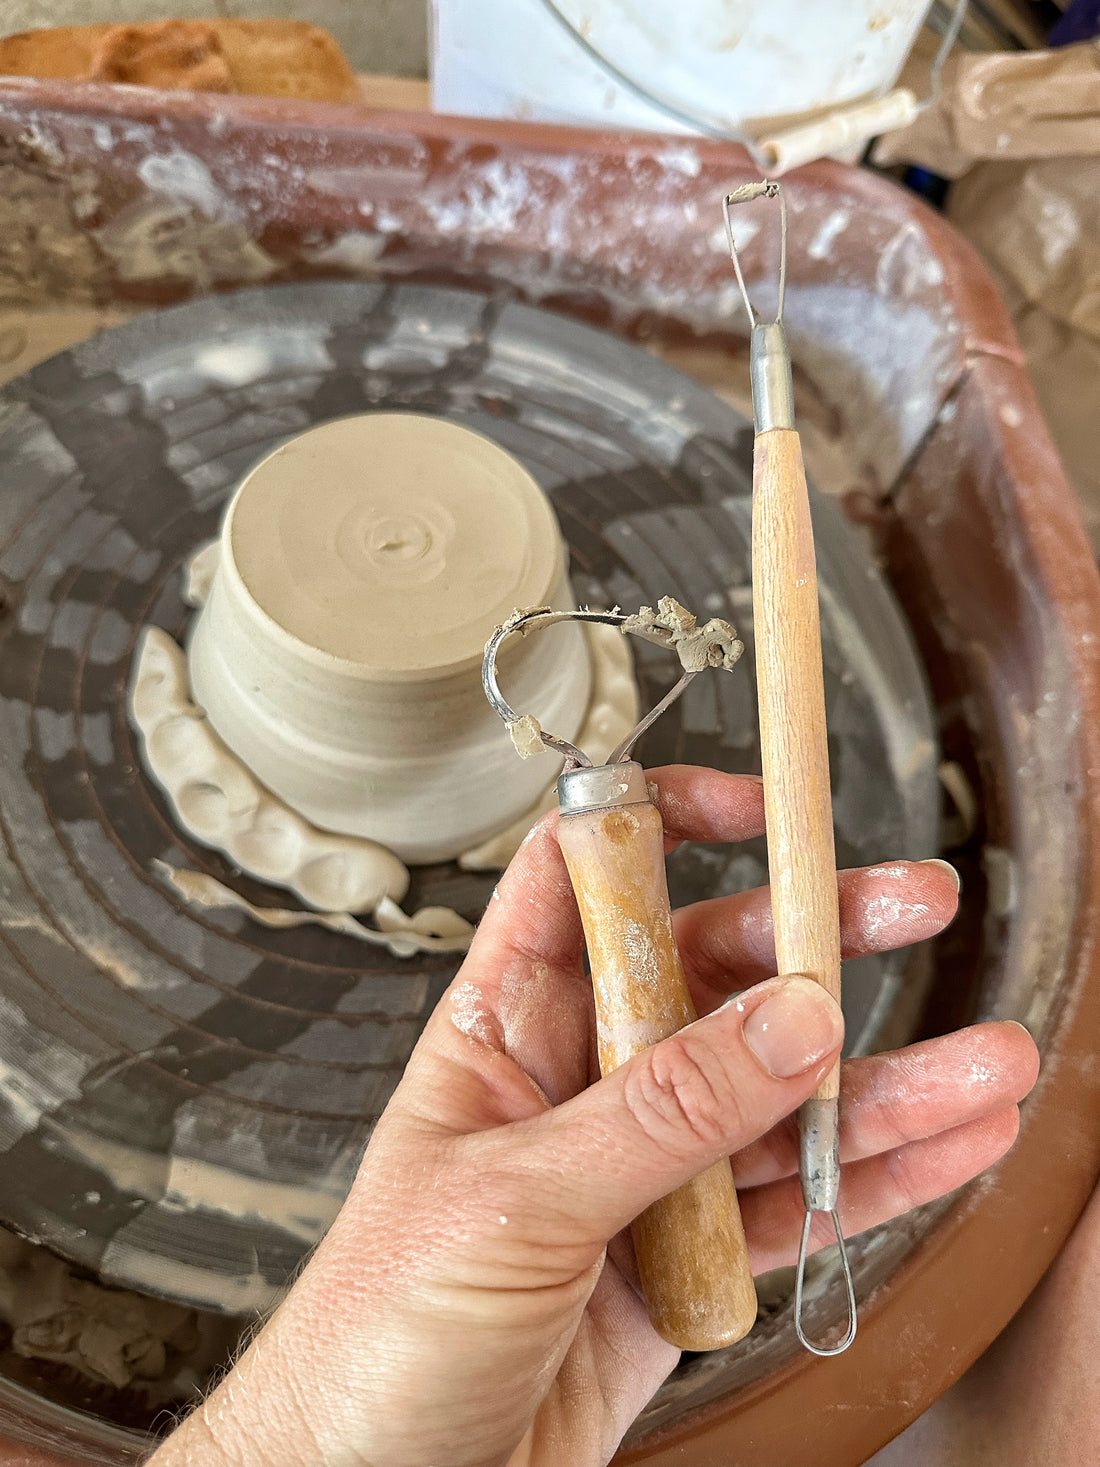 Trimming tools for ceramics